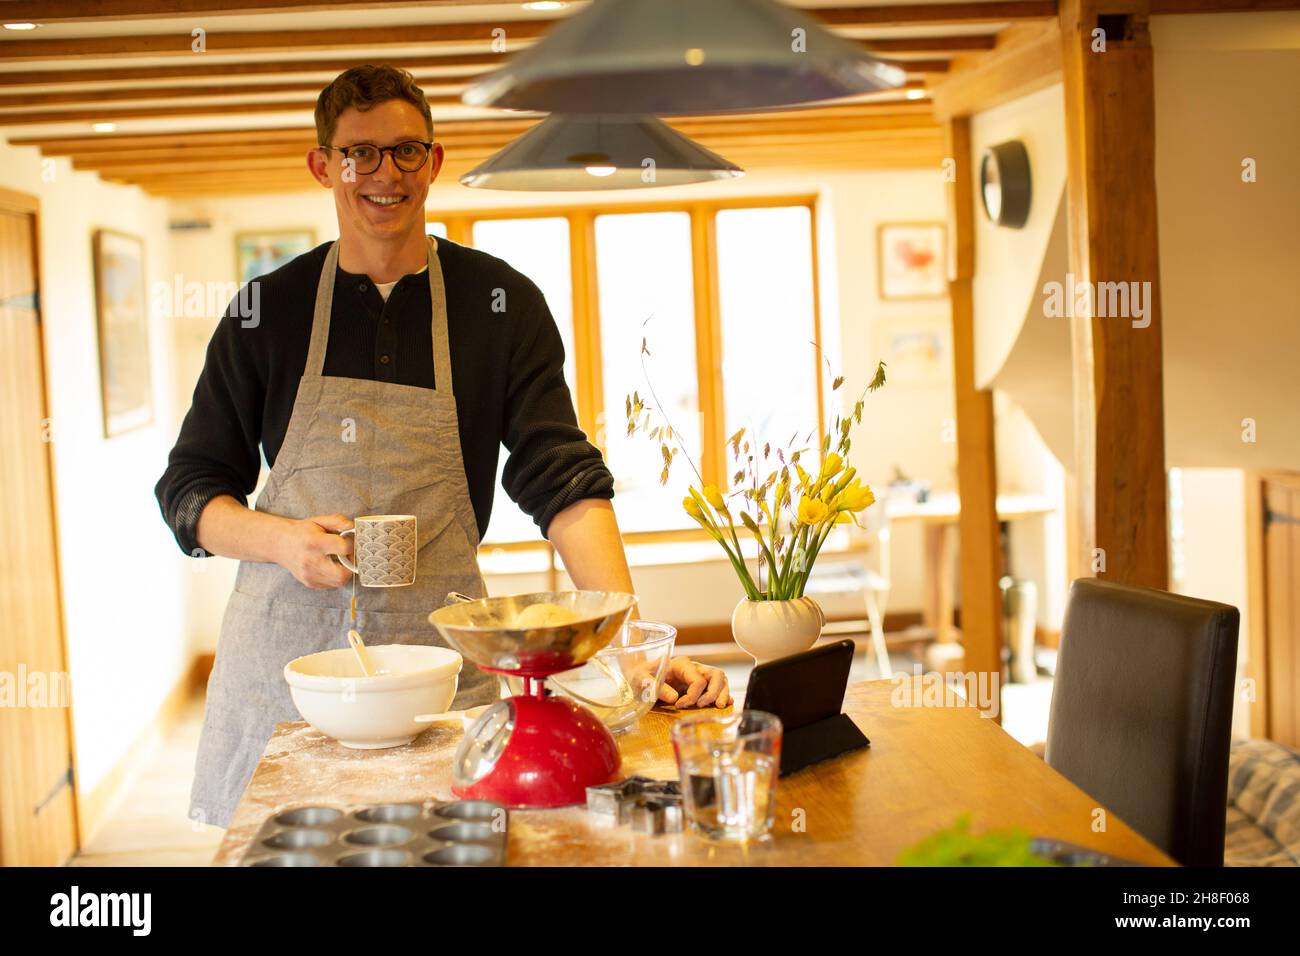 Portrait lächelnder Mann beim Backen in der Küche Stockfoto